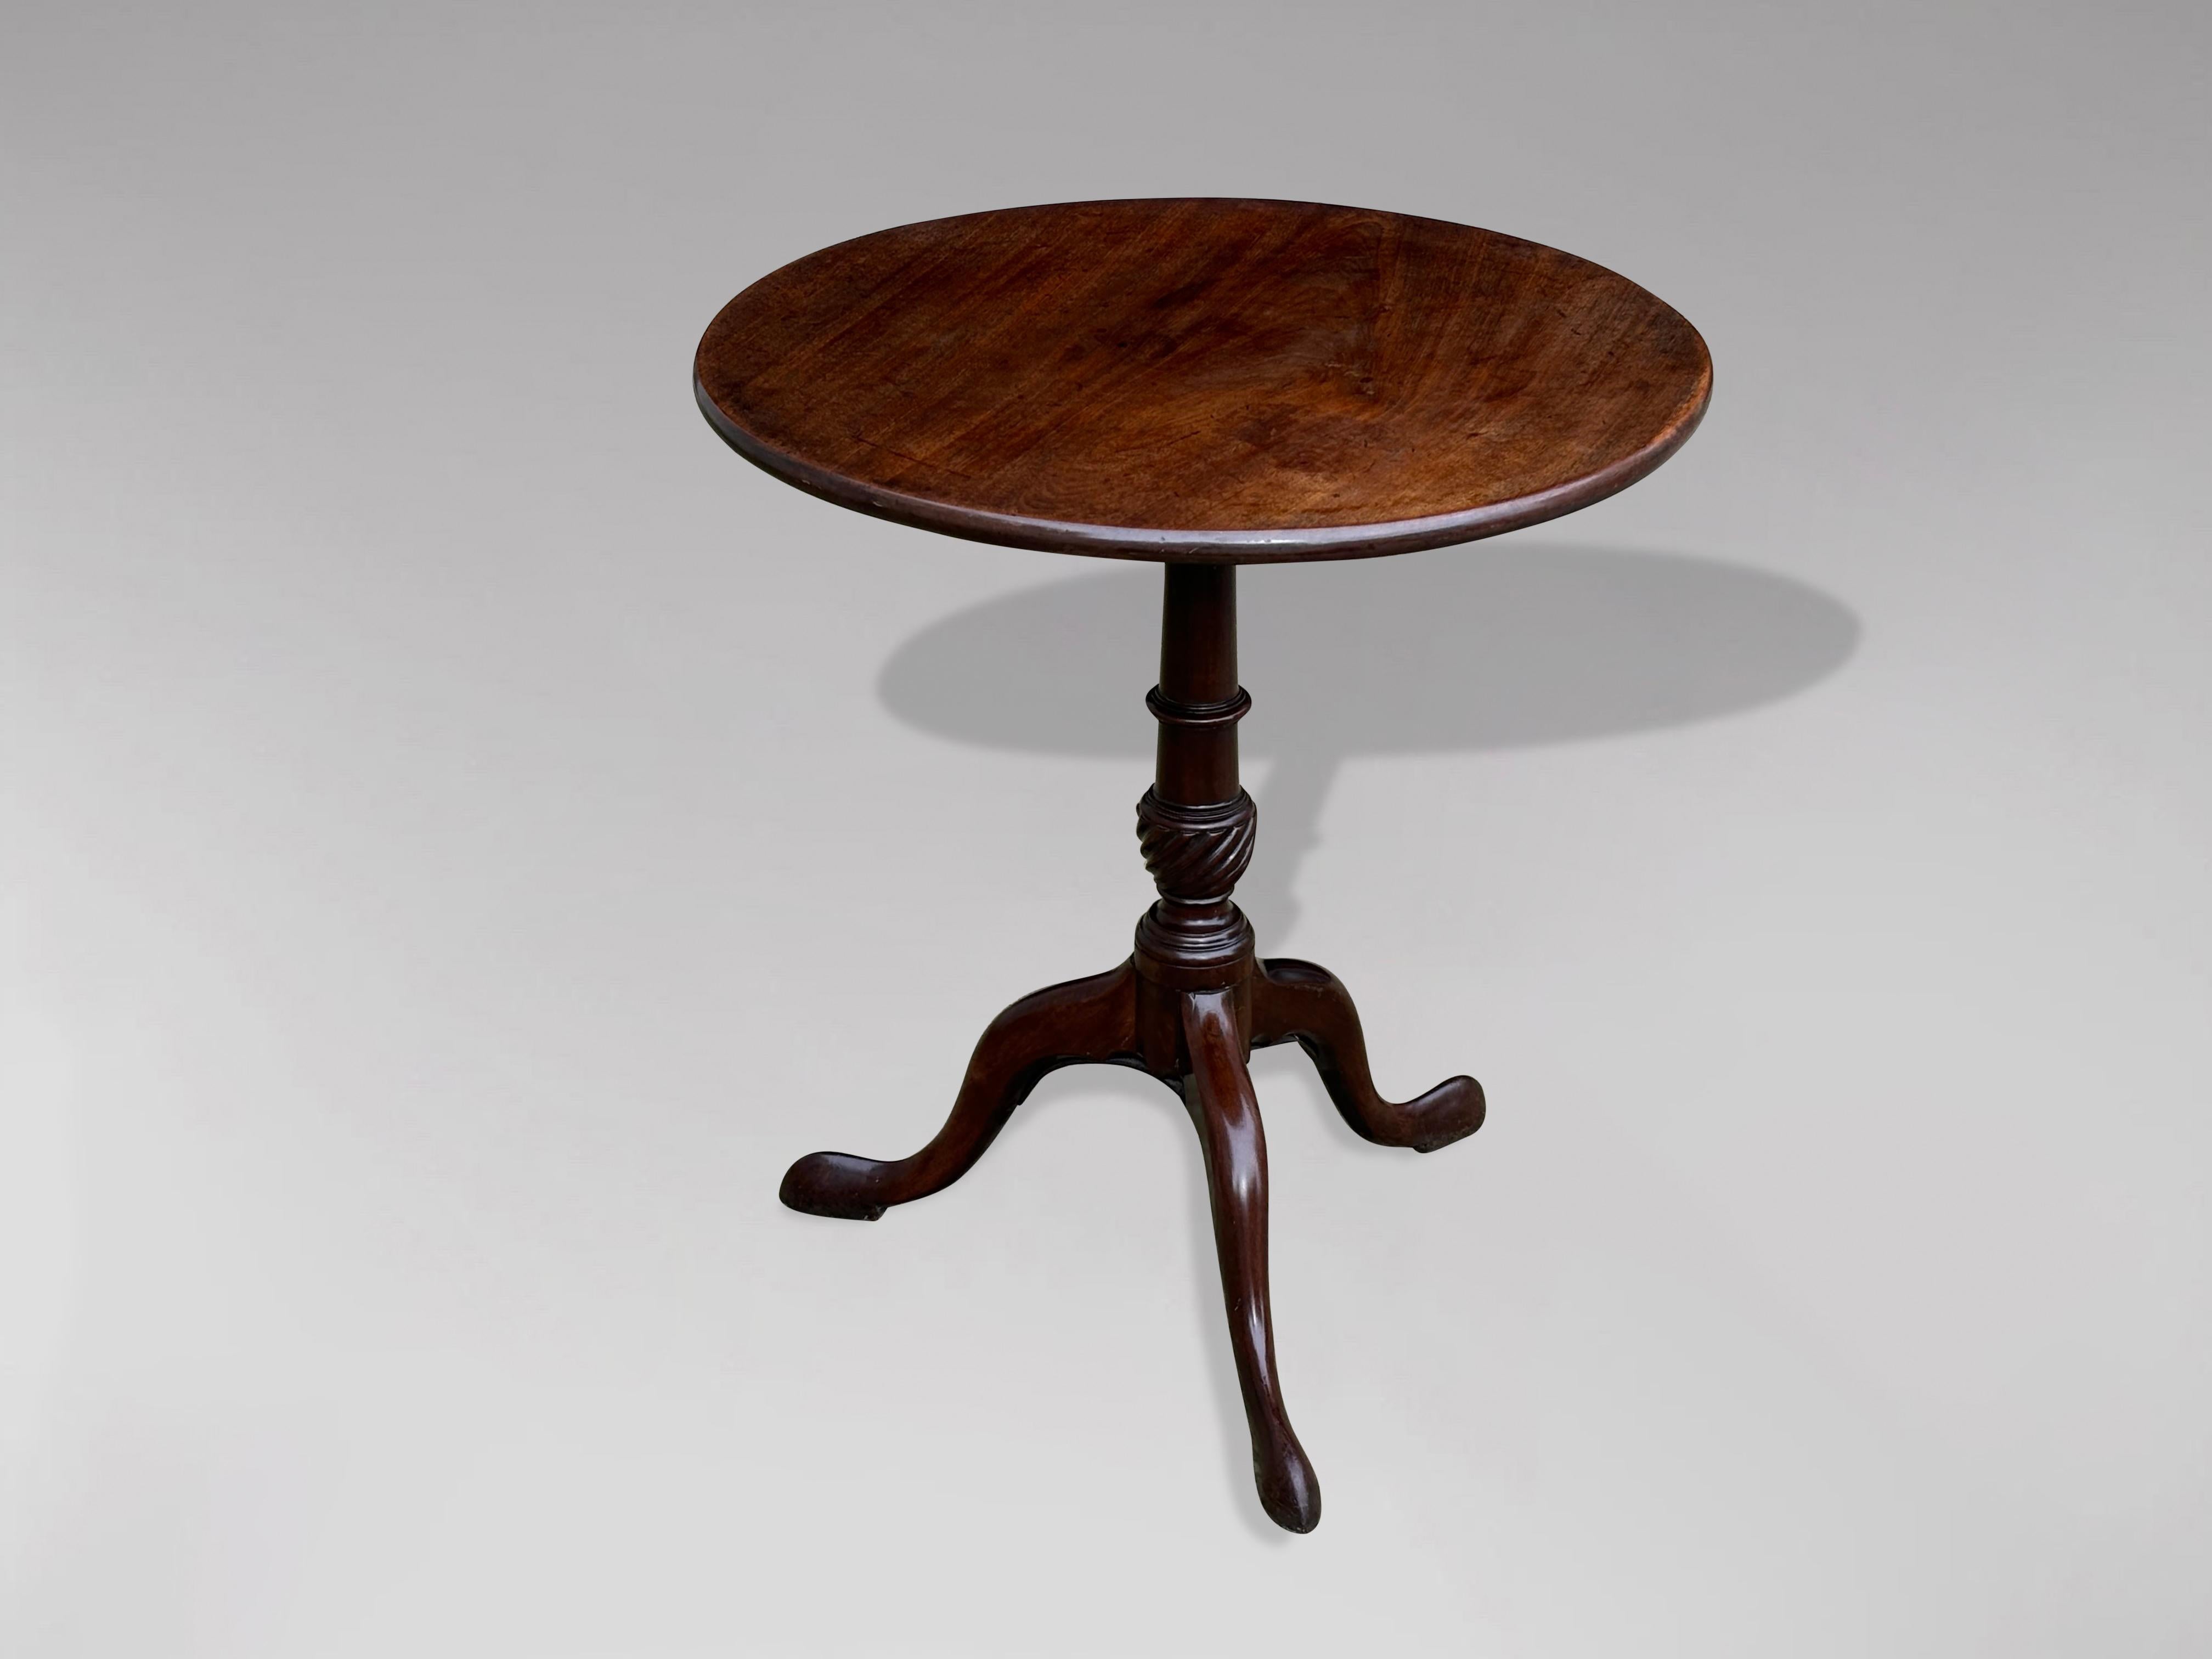 Ein hübscher Mahagoni-Dreibein-Tisch aus dem späten 18. Jahrhundert, aus der Zeit von George III. Die gut gemaserte, einteilige, runde Platte aus massivem Mahagoni, die sich über einer gedrehten, balusterförmigen Säule mit vasenförmigem Schaft